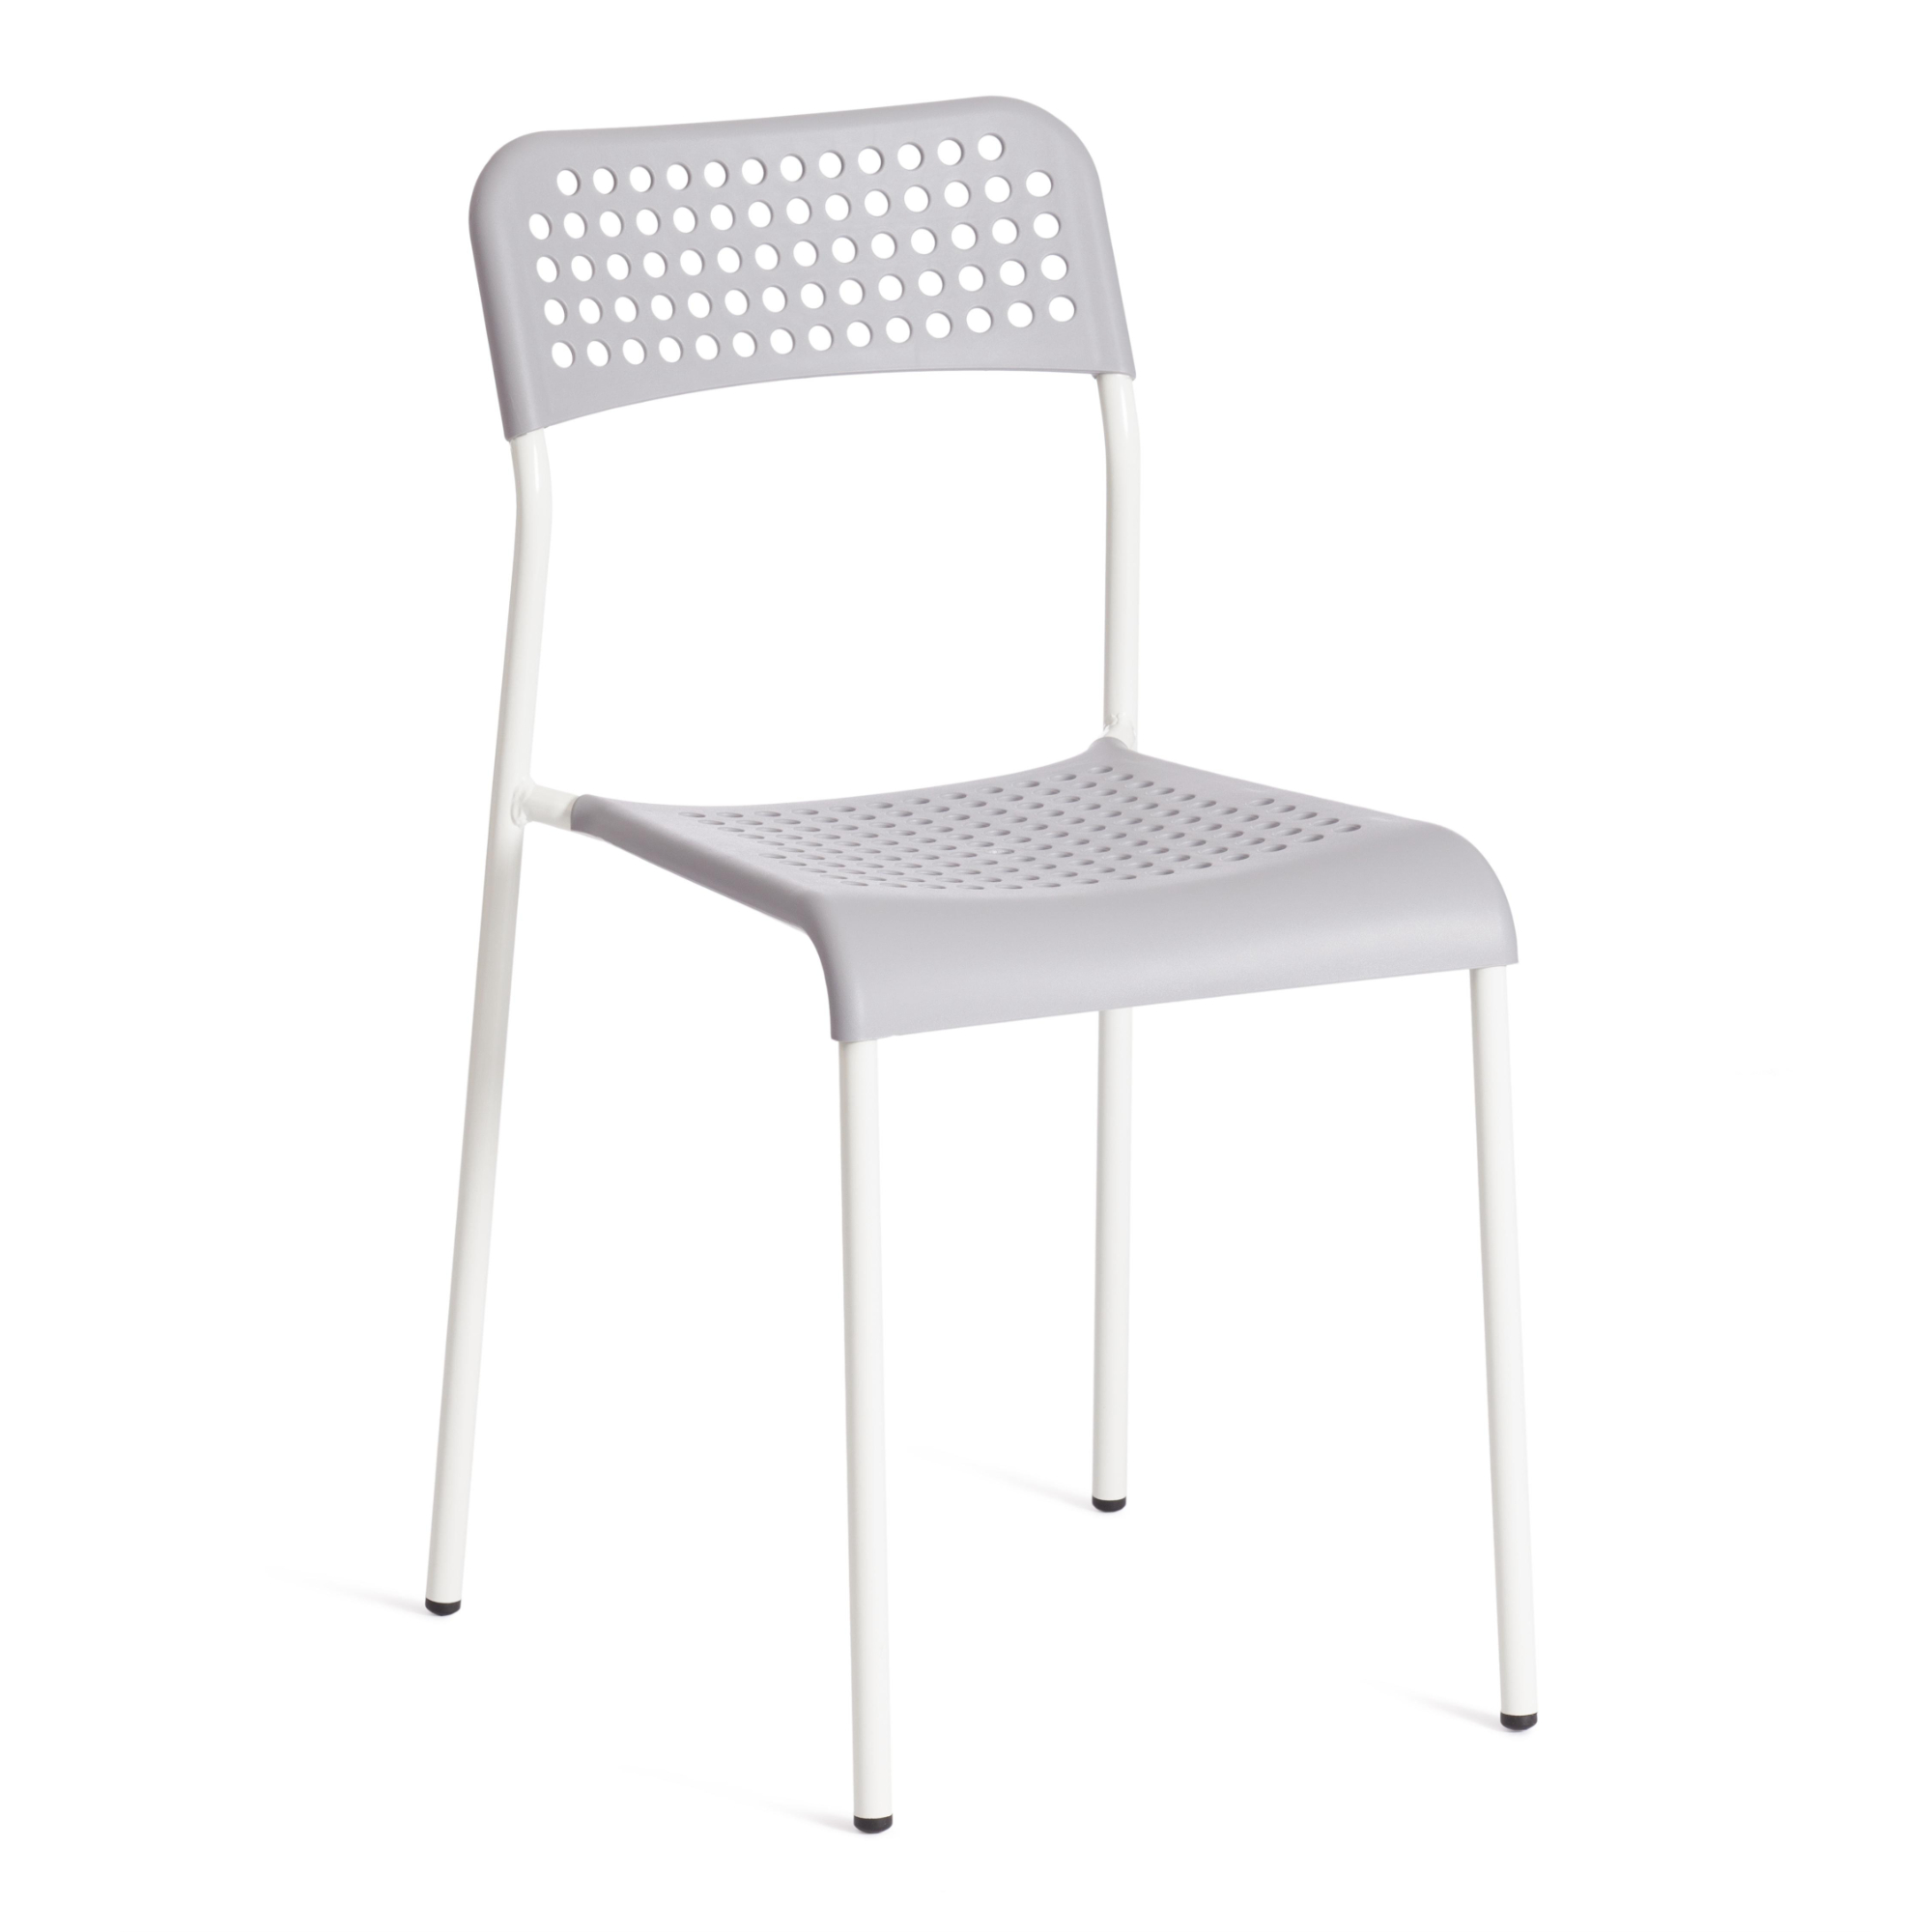 Стул ТС Adde серый пластиковый с металлическими ножками 39х49х78 см современный стул fallon с металлическими ножками зеленый бархат